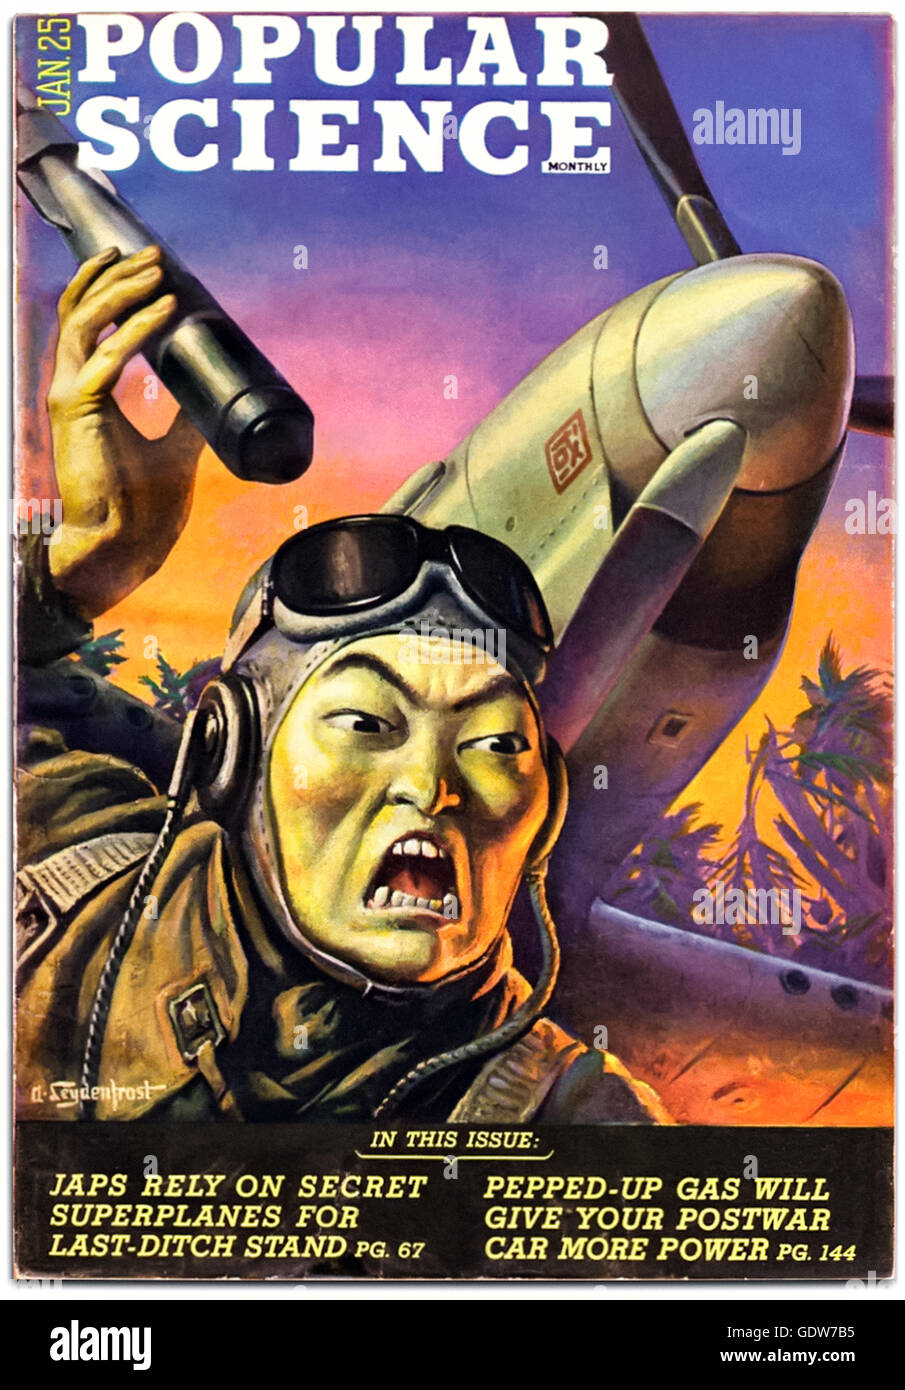 Titelseite der "Popular Science" Januar 1945, typisch für WW2 antijapanische Propaganda Darstellung der "Gelben Gefahr", übertriebene Zähne und Hautfarbe an den bedrohlichen kaiserlichen japanischen Piloten halten eine Art 2-1/3 kg H.E.A.T Streubomben hinzugefügt. Siehe Beschreibung für mehr Informationen. Stockfoto